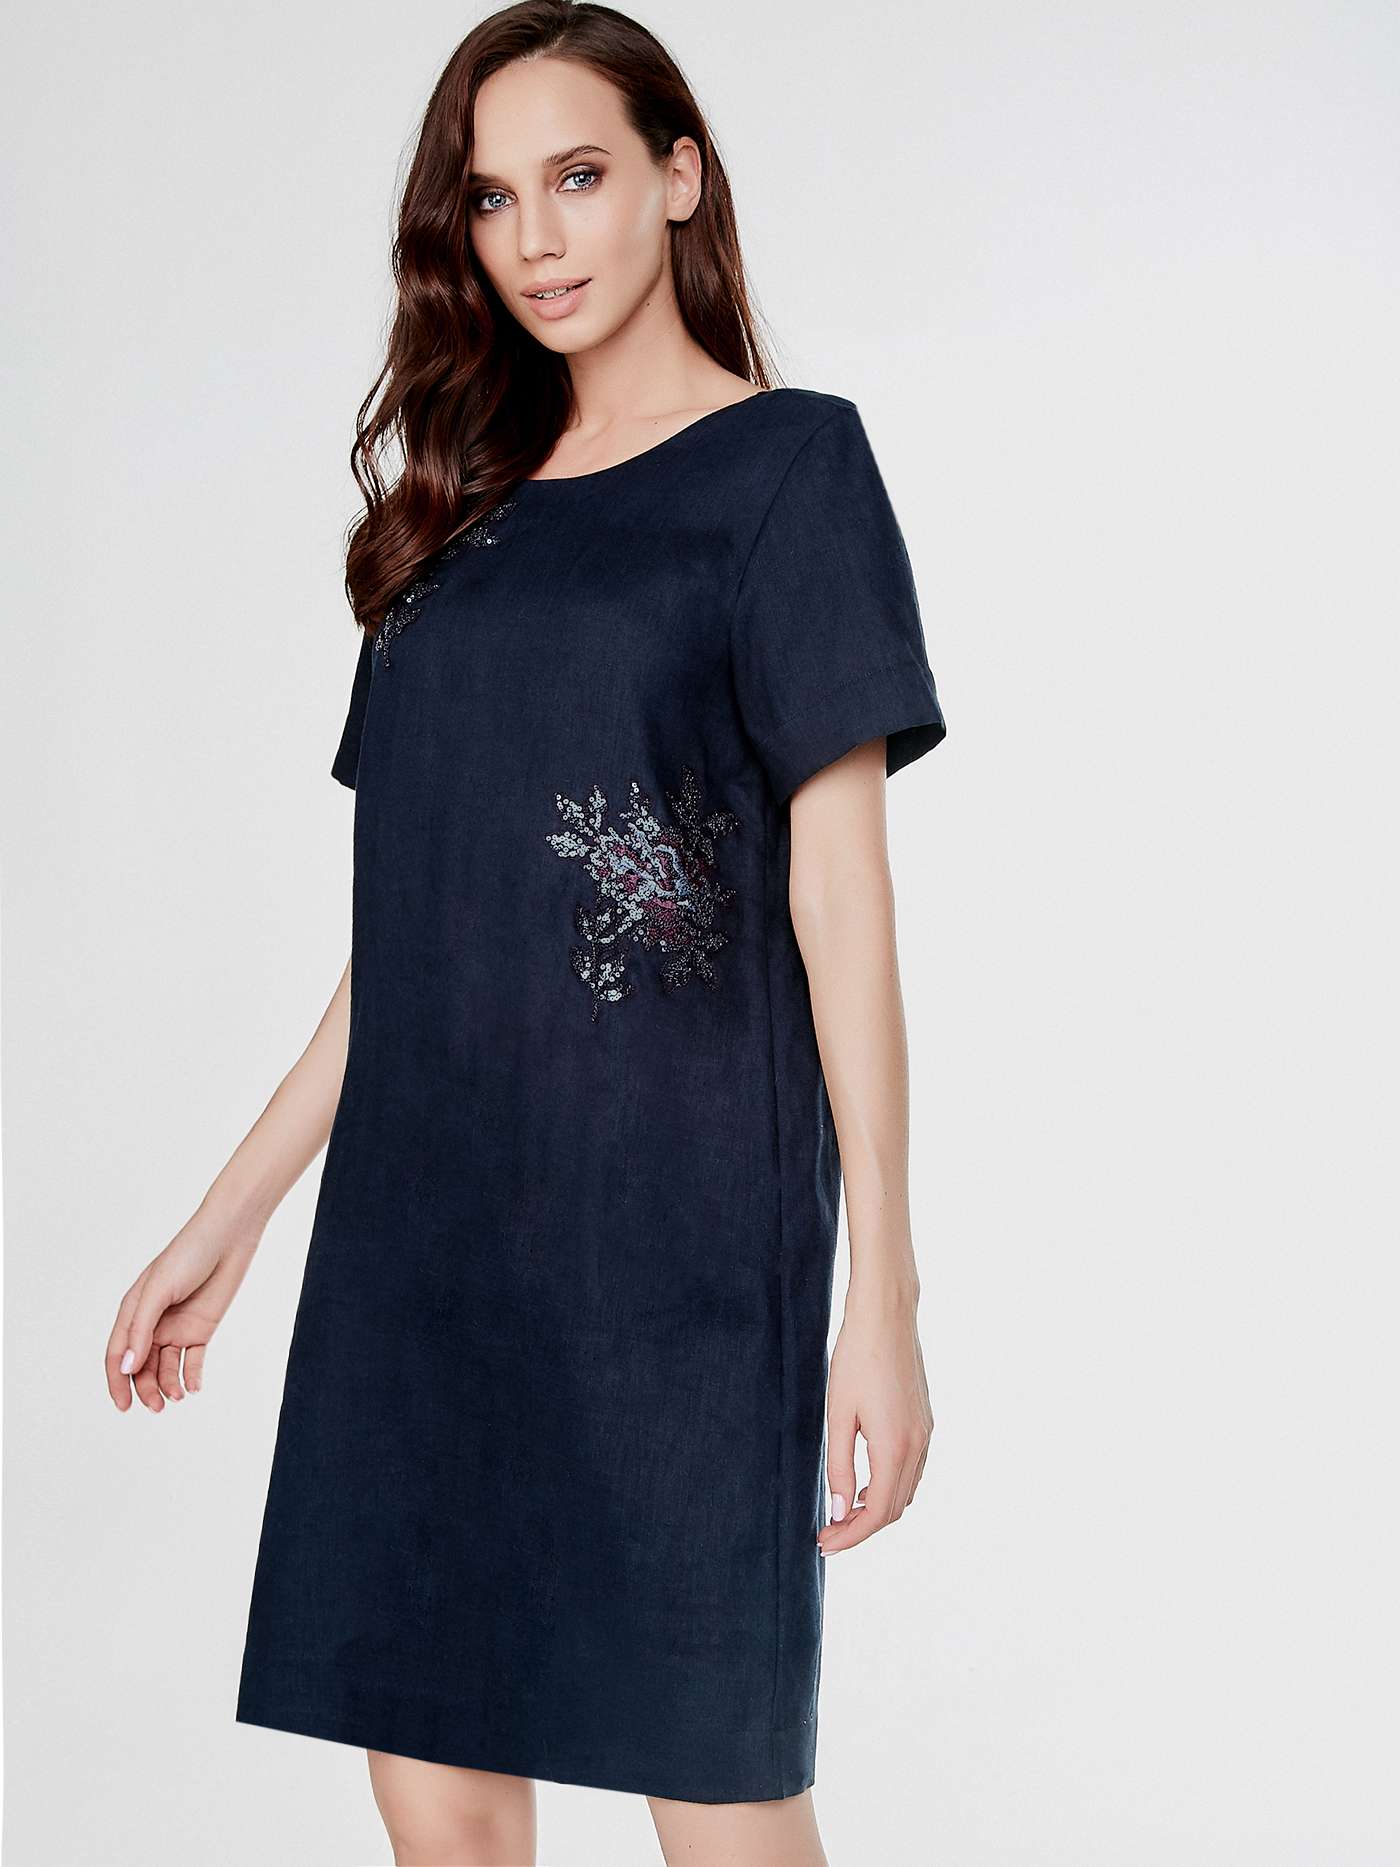 Платье WILD ORCHID SUNSHINE BEACH Синий 2610S4501